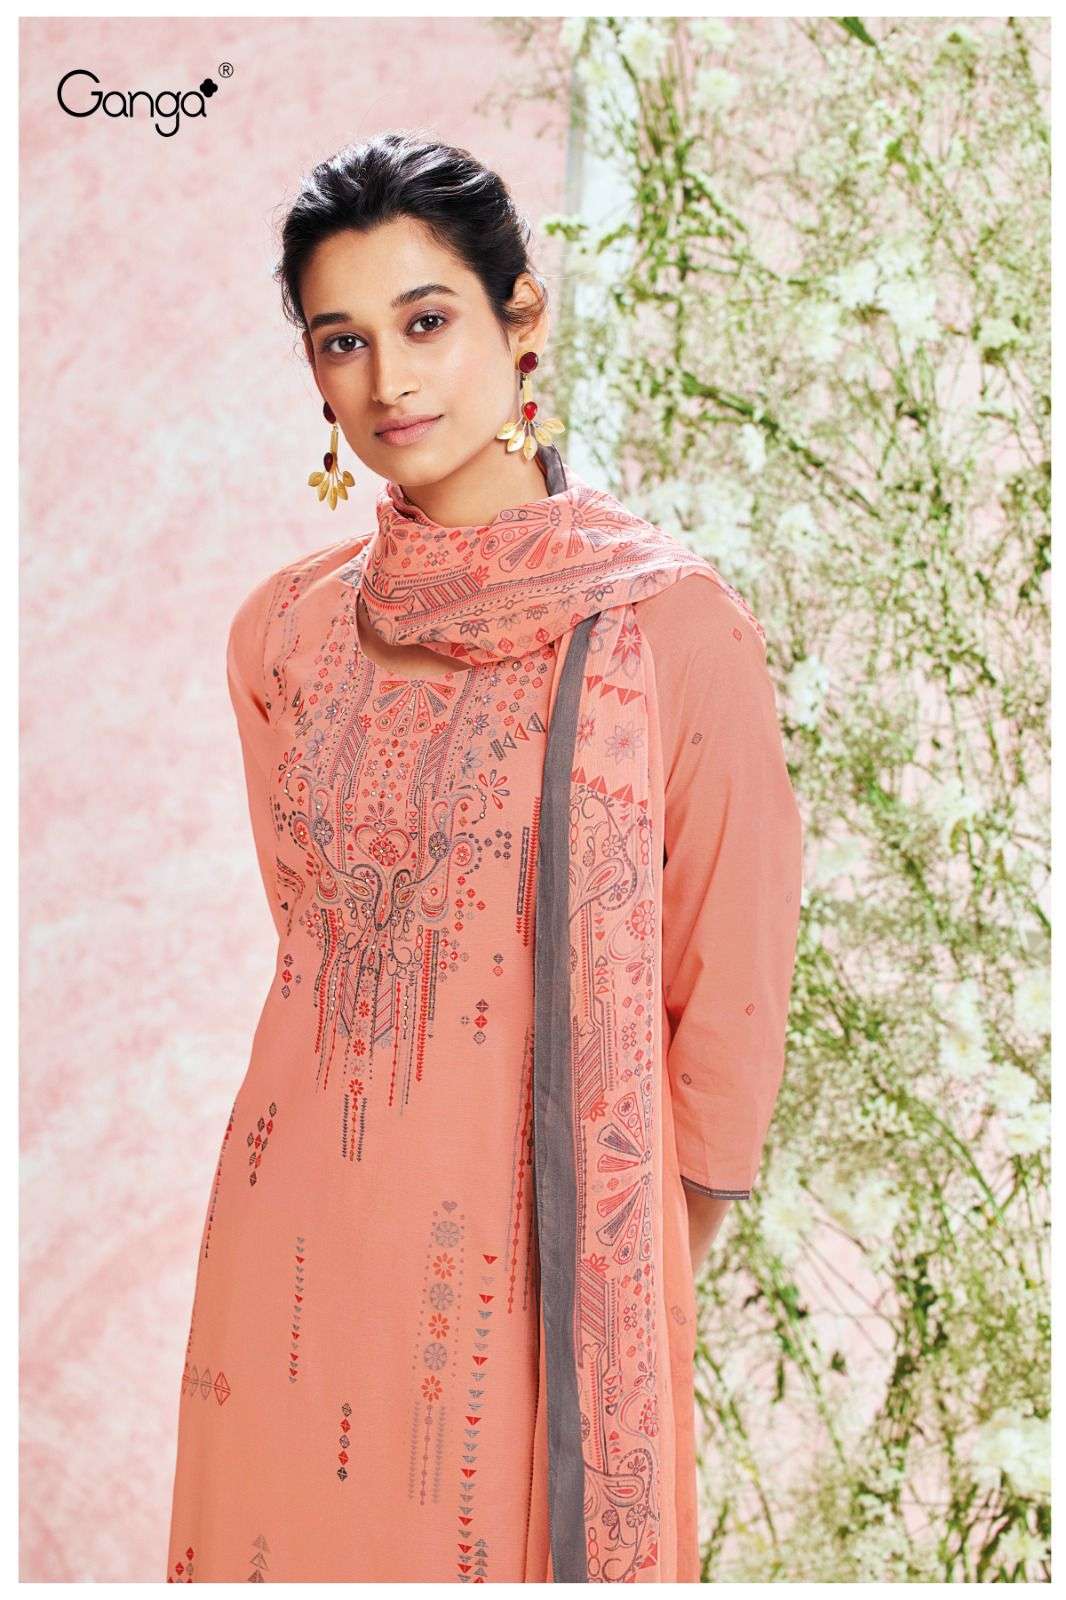 ganga janya 1630 series unstich designer dress material catalogue online dealer surat 